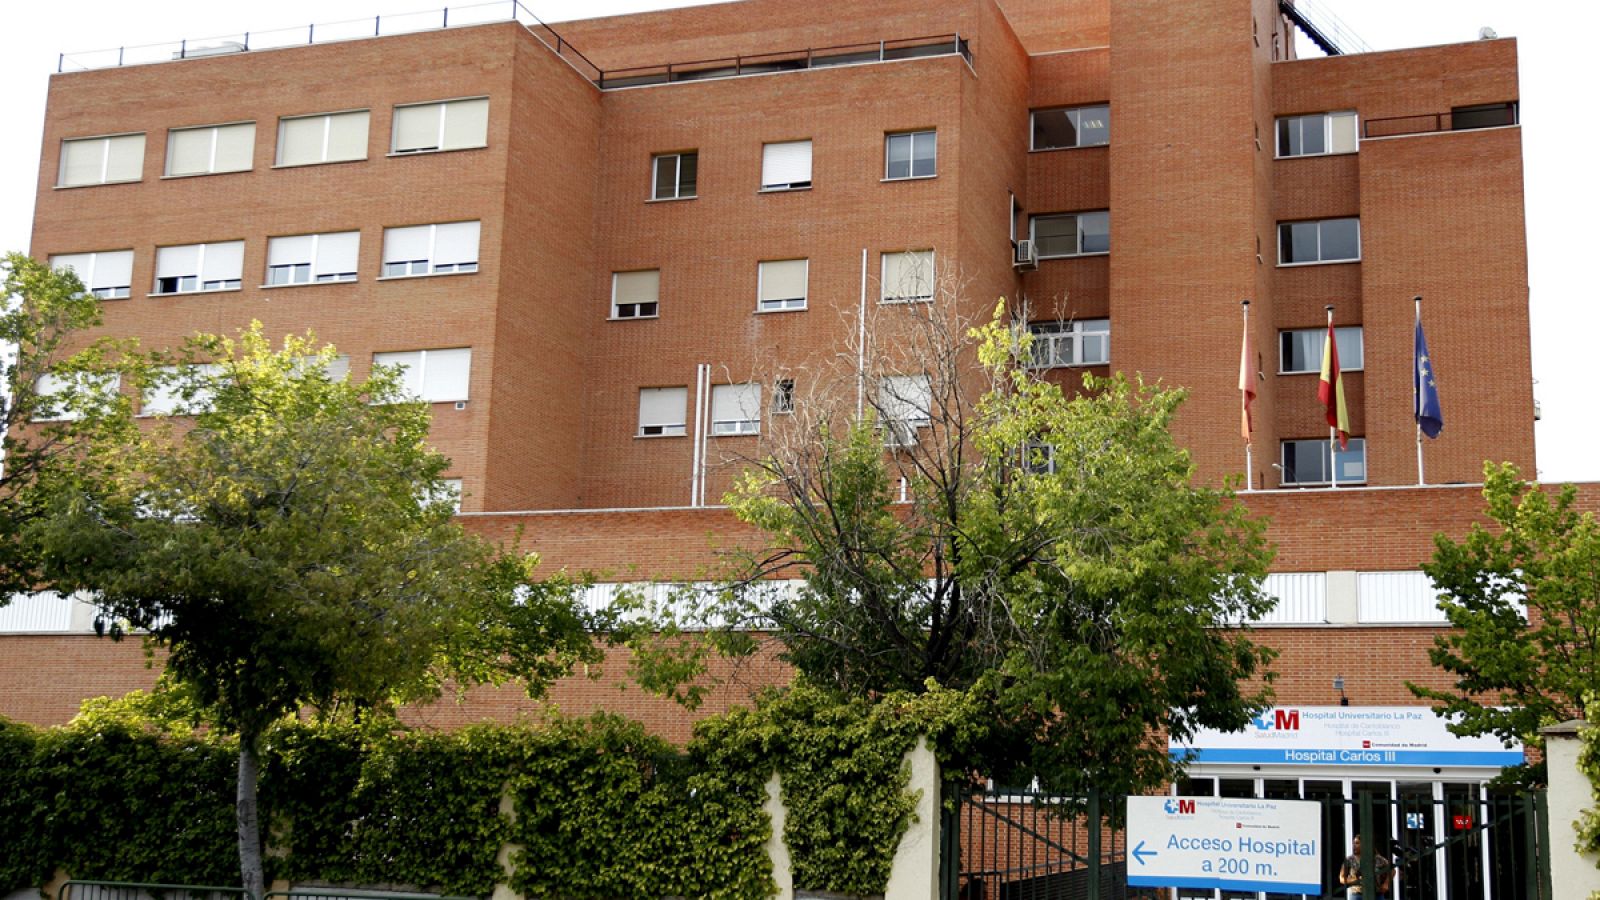 Fachada del Hospital La Paz-Carlos III de Madrid, donde estuvo ingresada la enfermera del Hospital Infanta Leonor contagiada por la fiebre hemorrágica